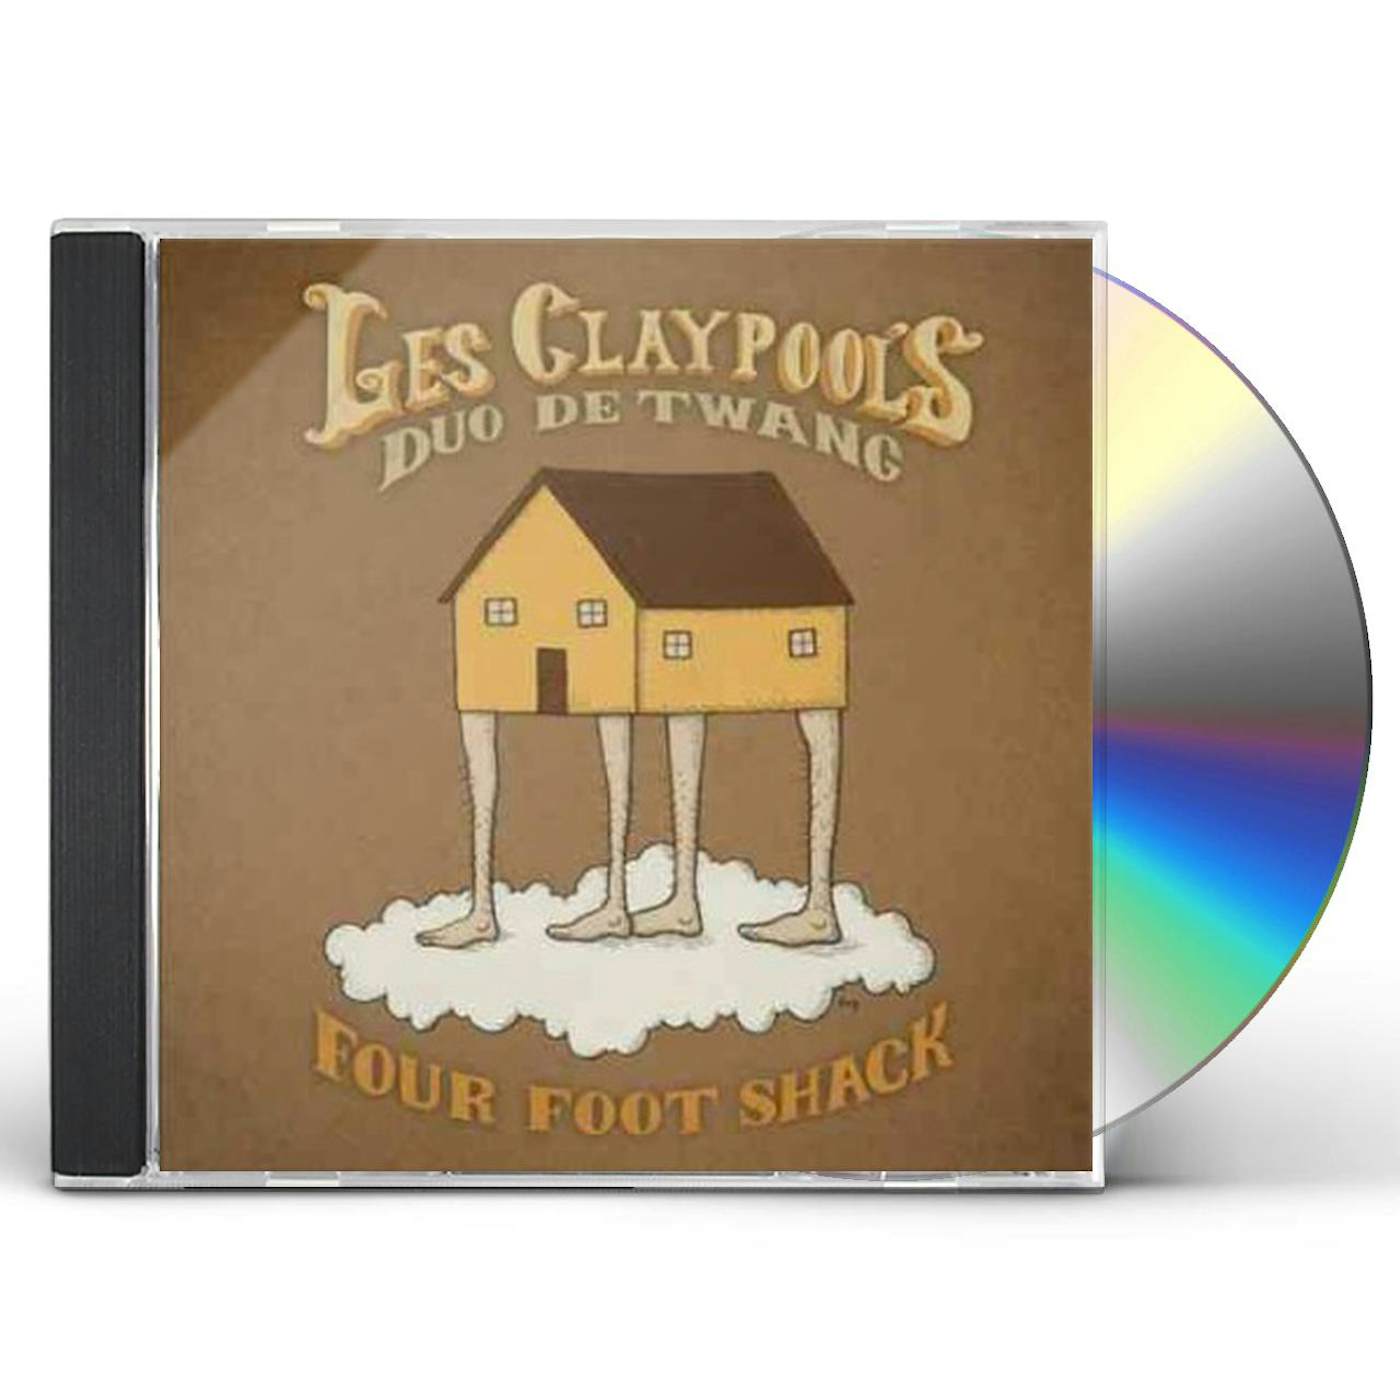 Les Claypool's Duo De Twang FOUR FOOT SHACK CD